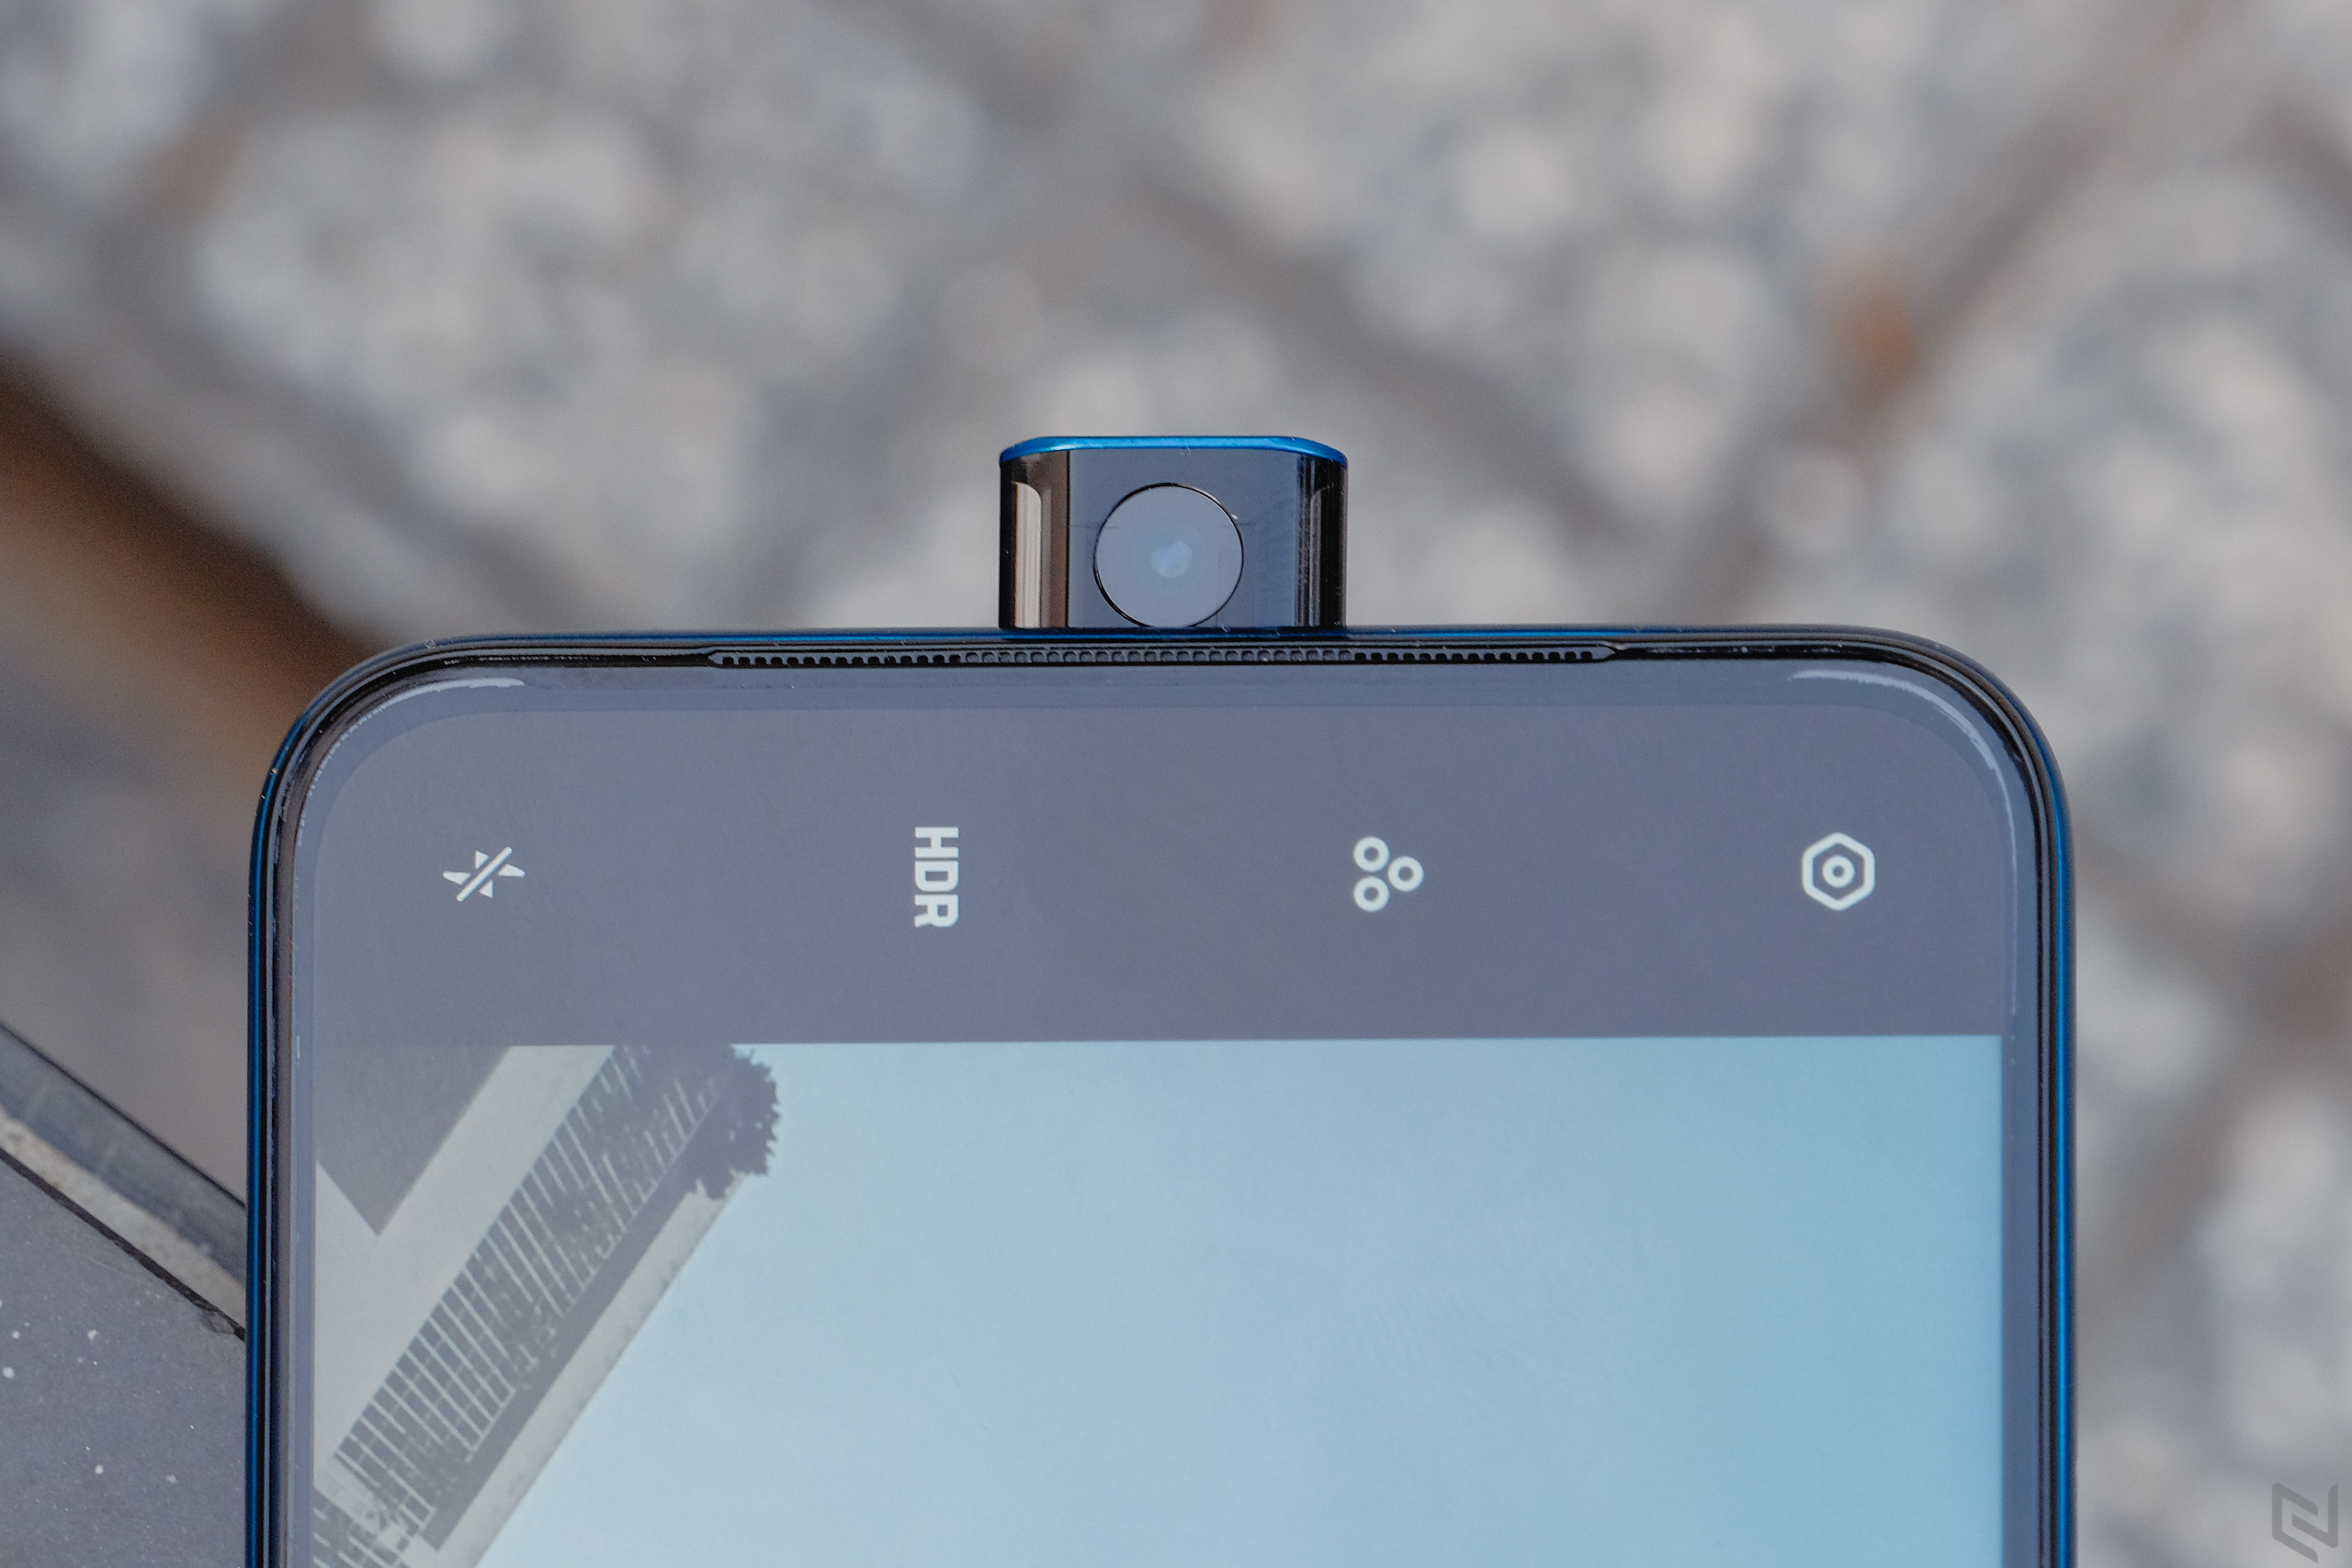 Mở hộp OPPO F11 Pro: Ấn tượng với màn hình Full View Panoramic, camera selfie Pop-up